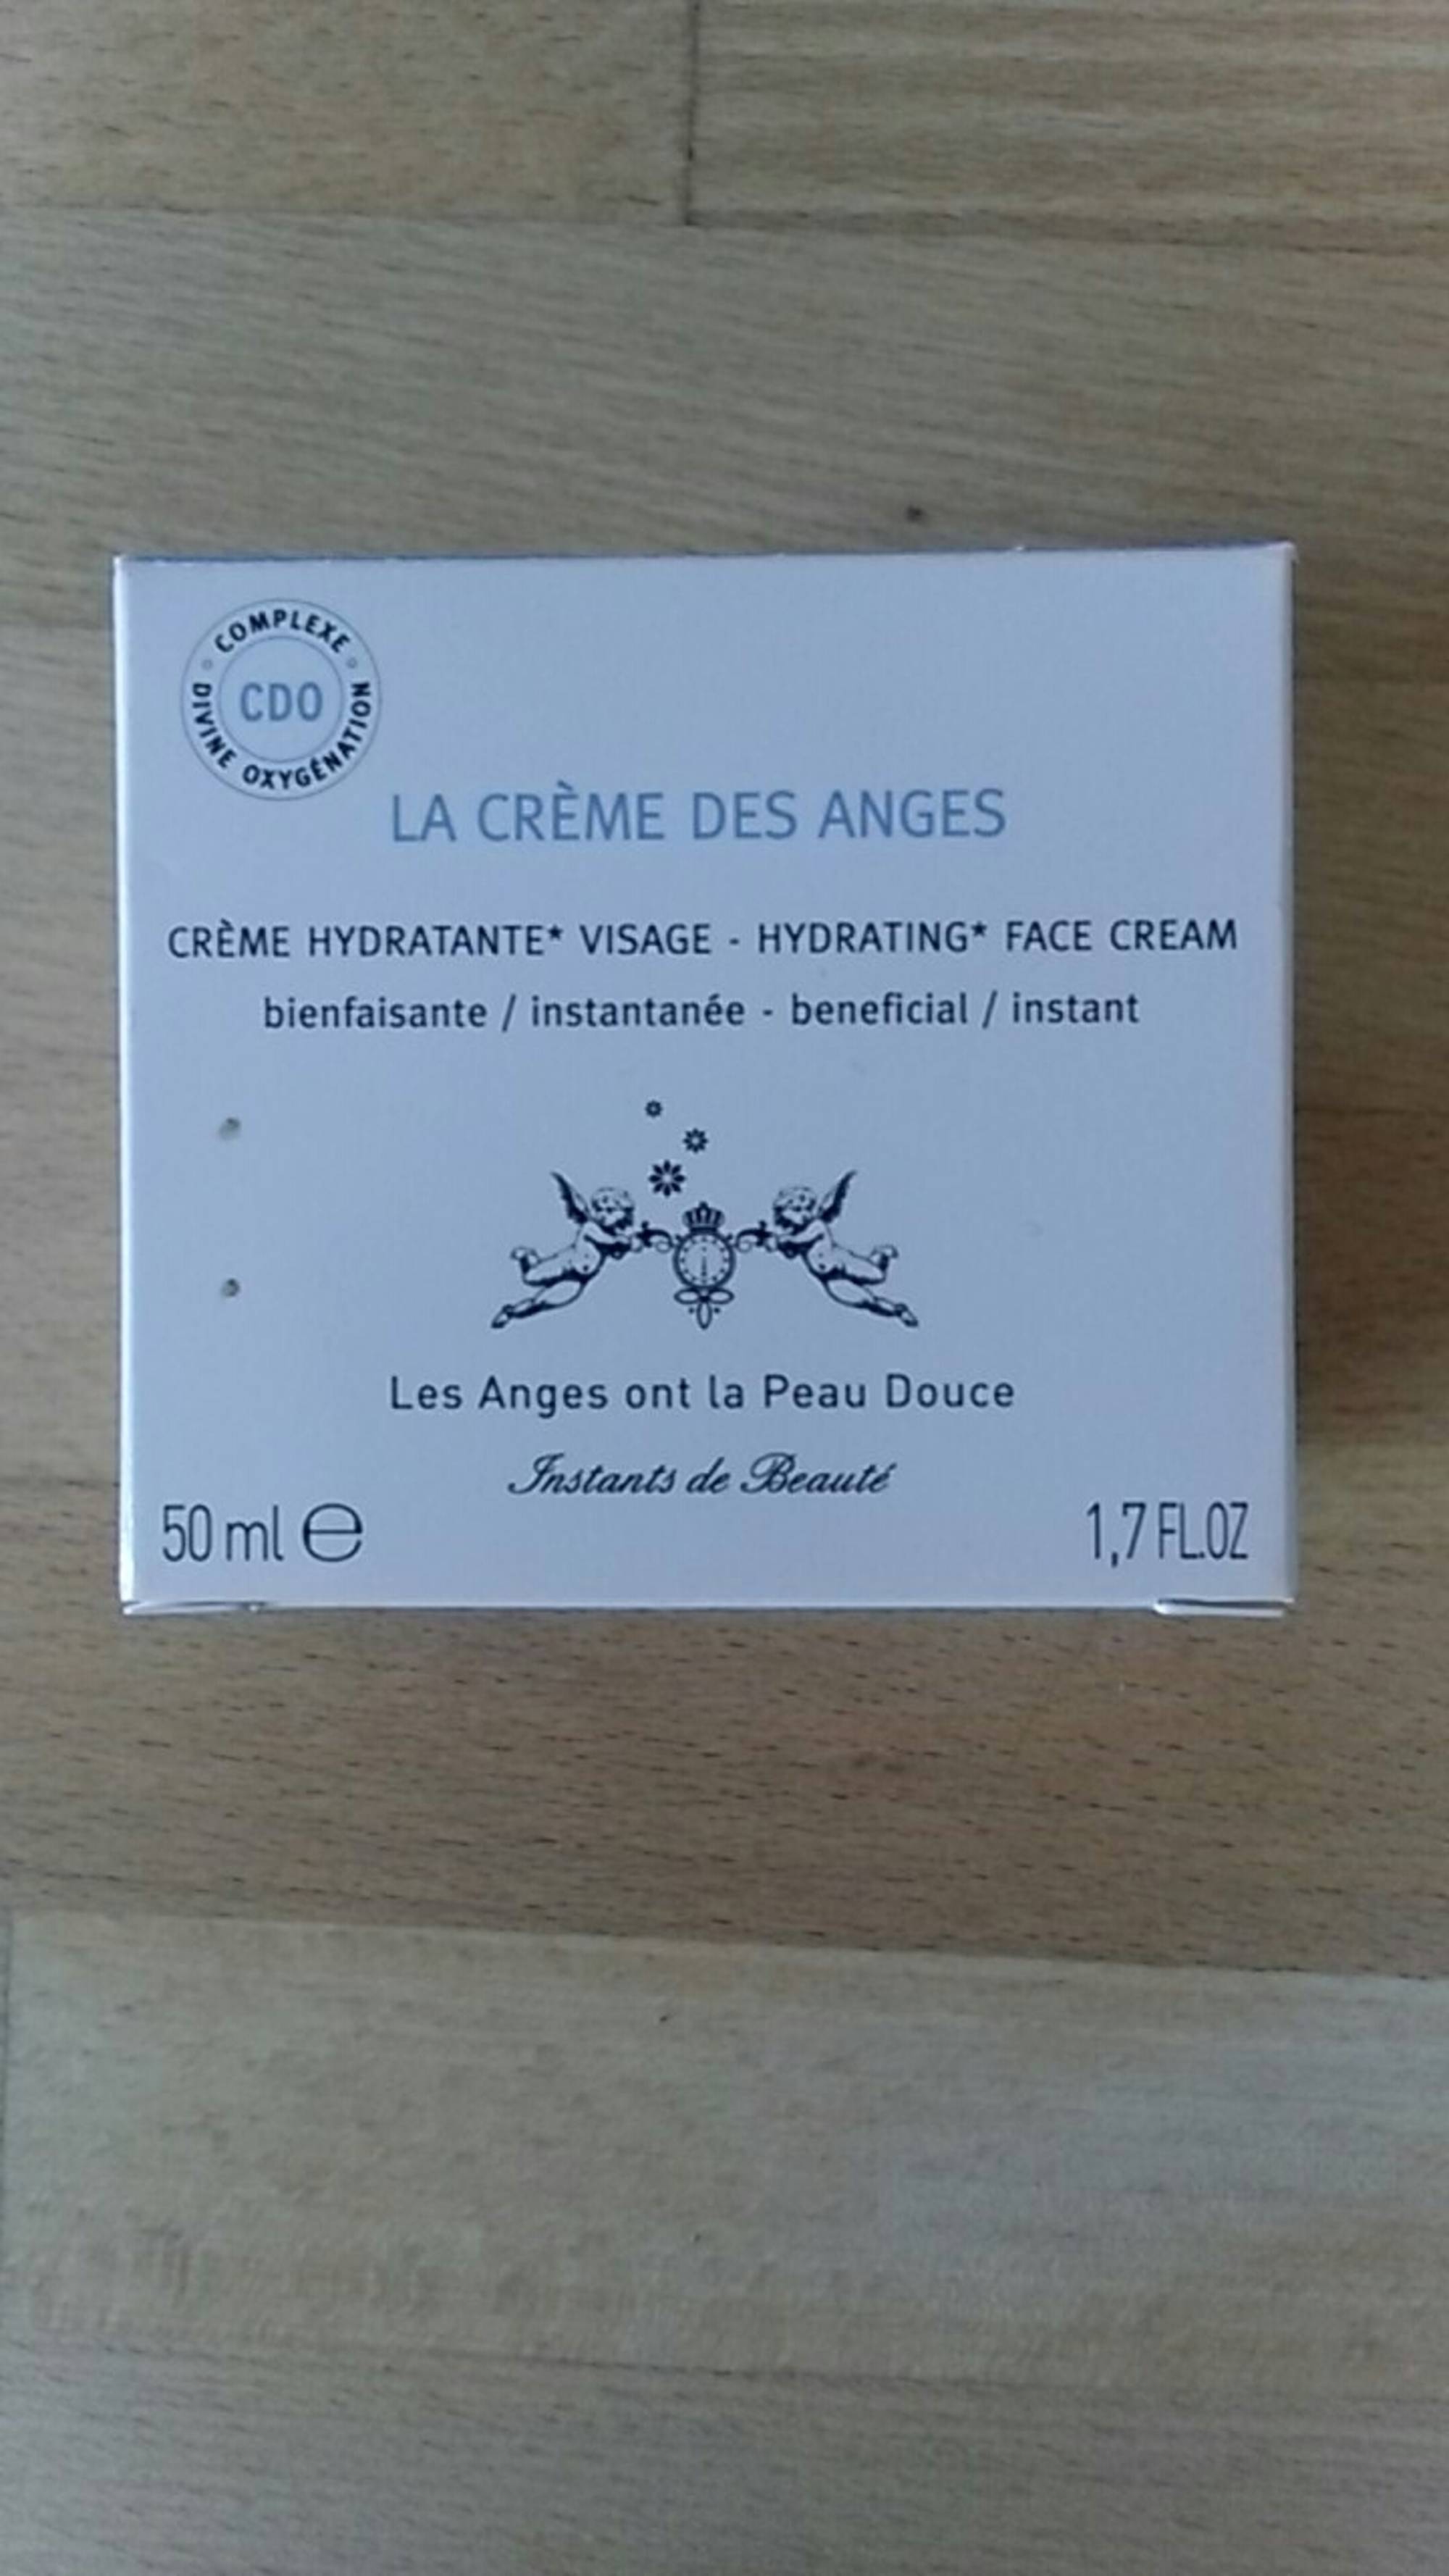 LES ANGES ONT LA PEAU DOUCE - La crème des anges - Crème hydratante visage